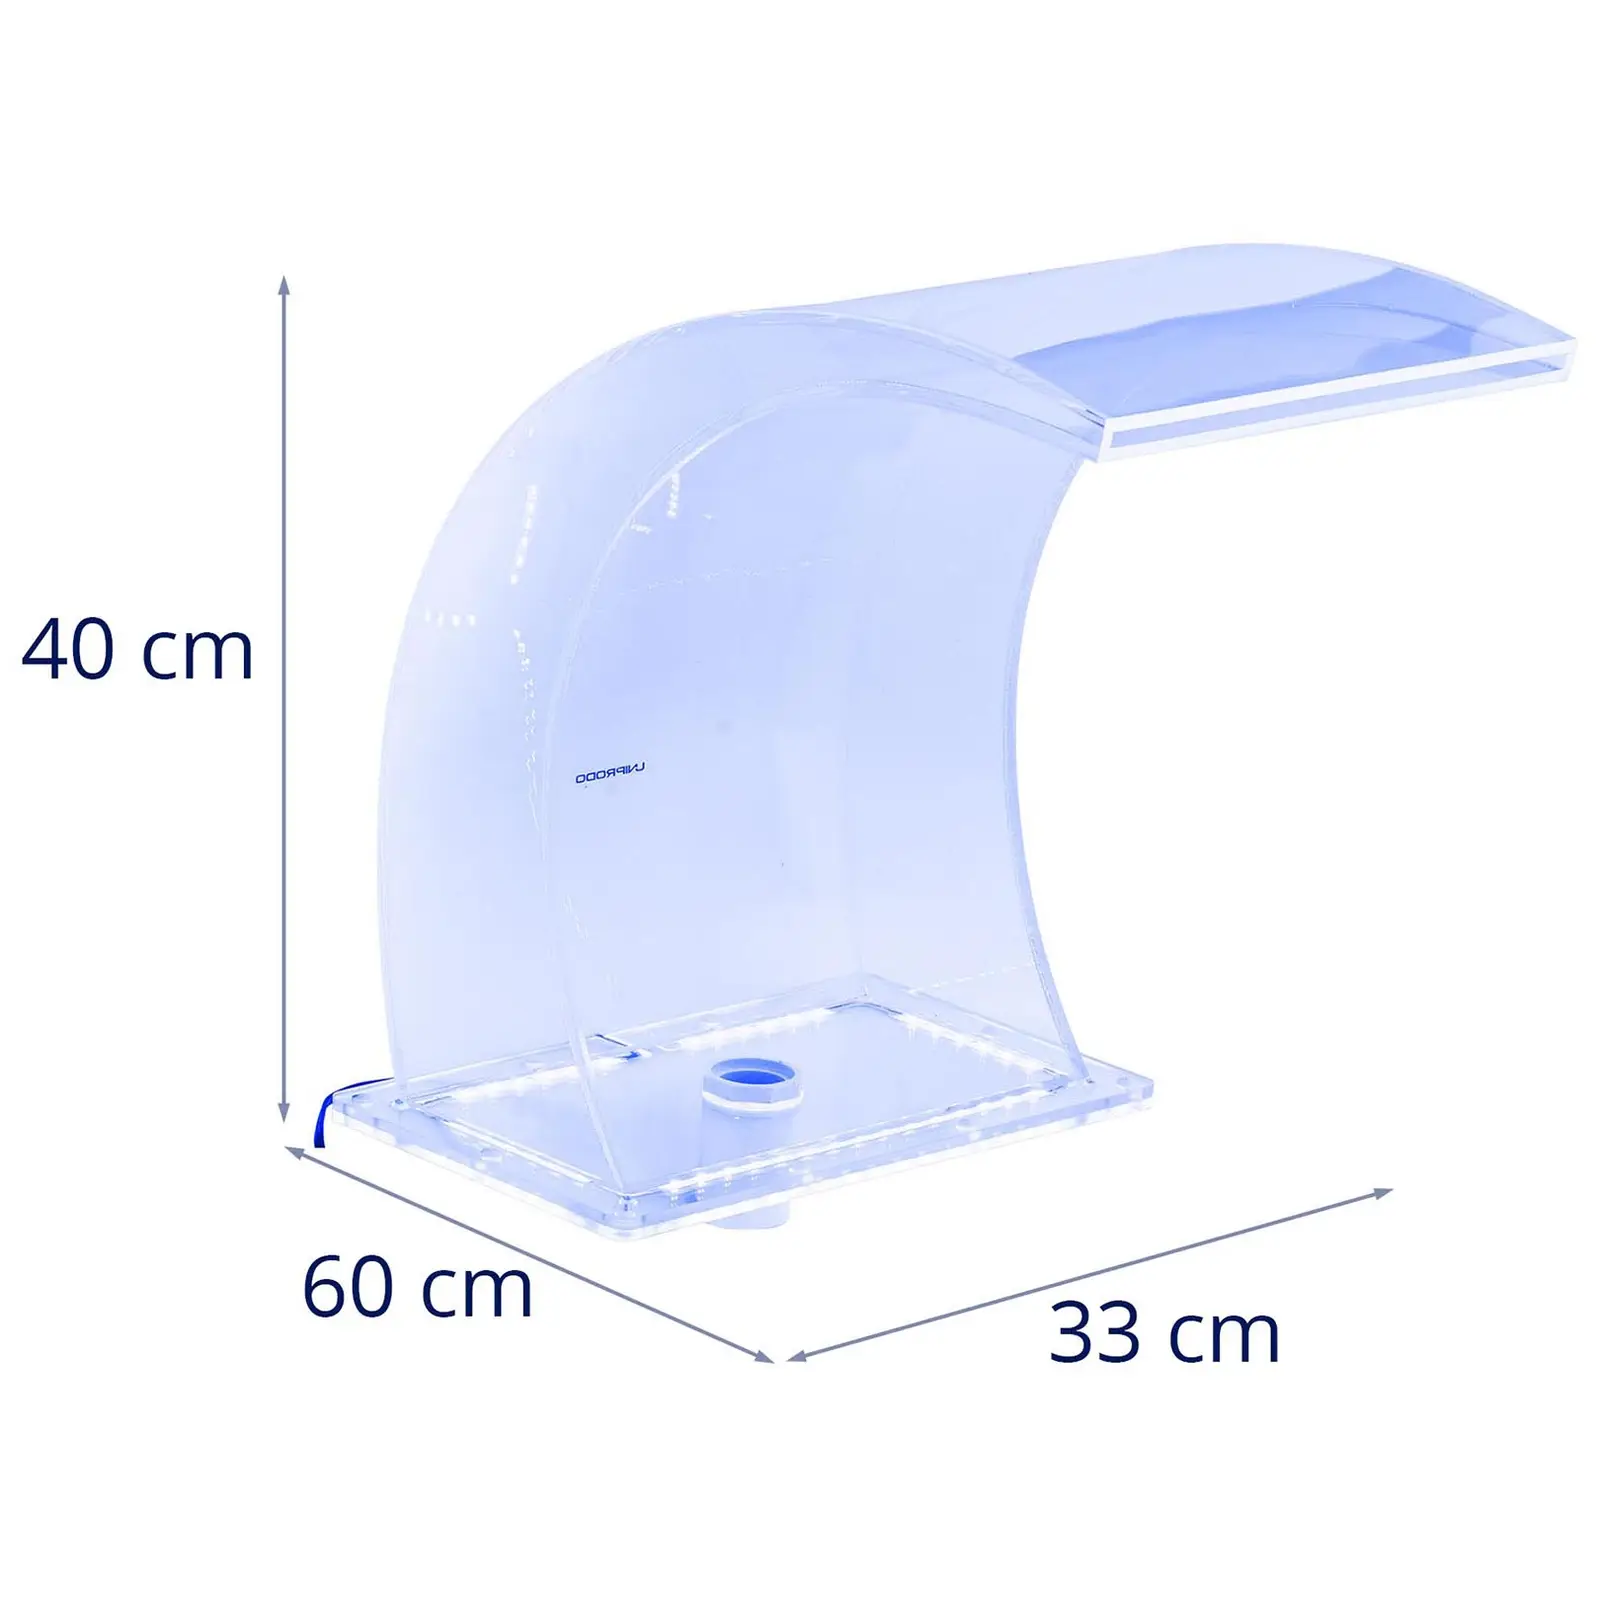 Wylewka wodospadowa - 33 cm - oświetlenie LED - niebieski/biały - wypływ wody 303 mm